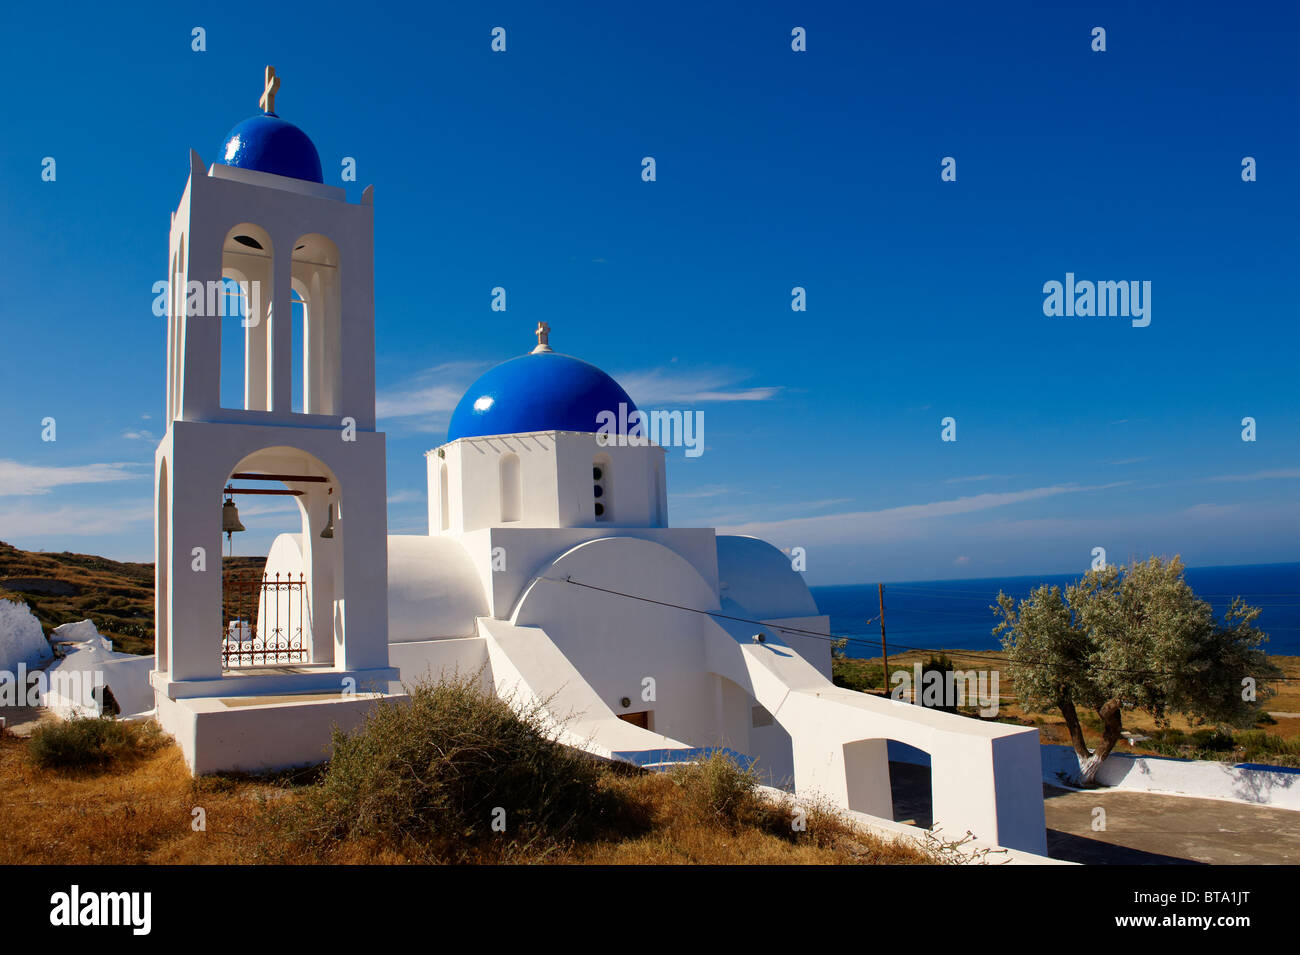 Blaue Kuppel griechisch-orthodoxen Kirche und Glockenturm in der Nähe von Oia (Ia), Santorini, Griechenland Stockfoto